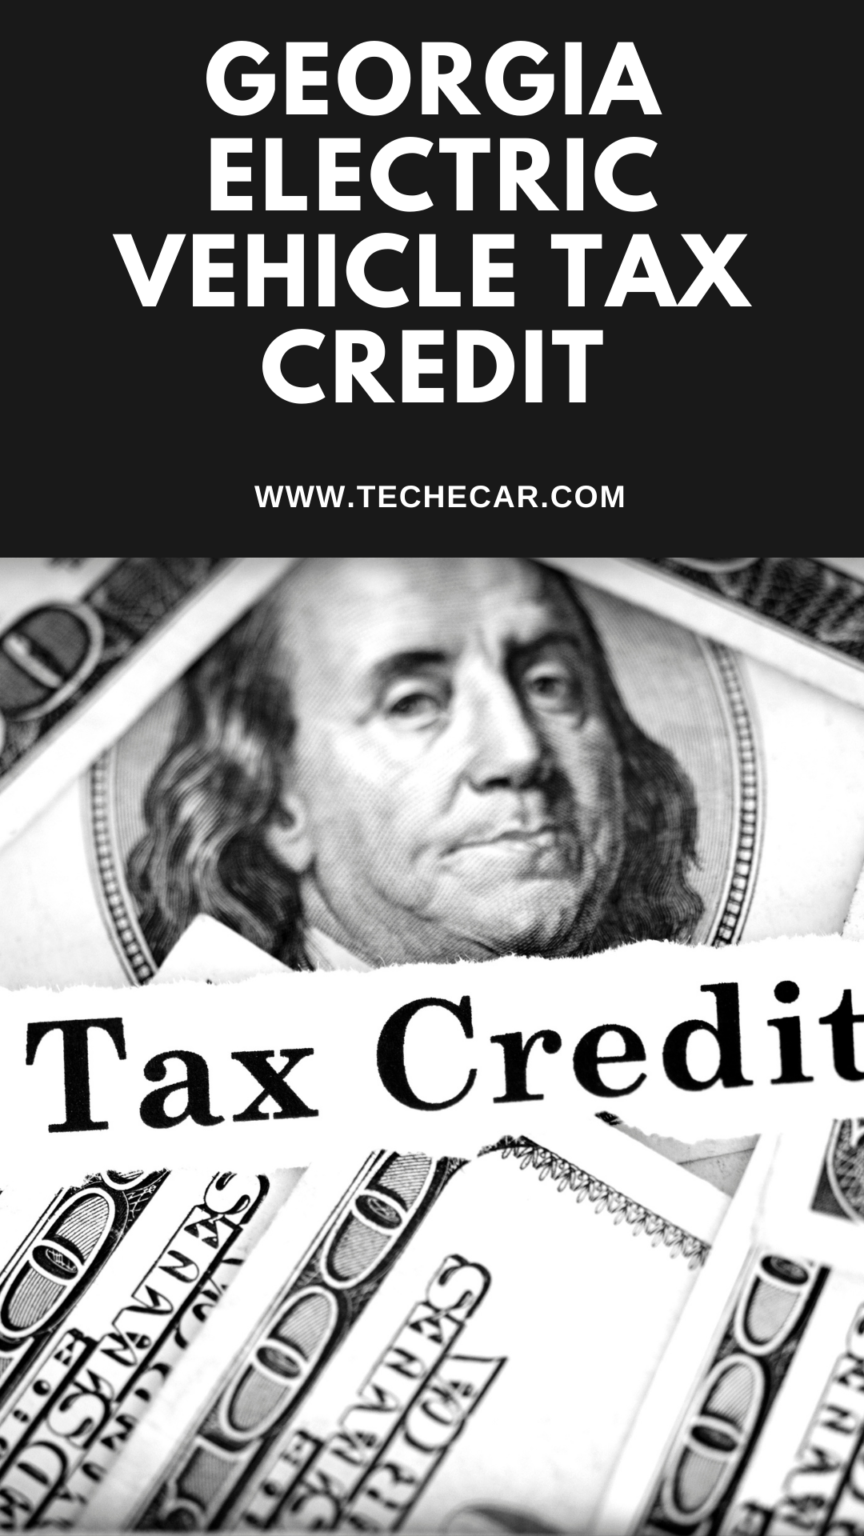 Georgia Electric Vehicle Tax Credit TECHECAR